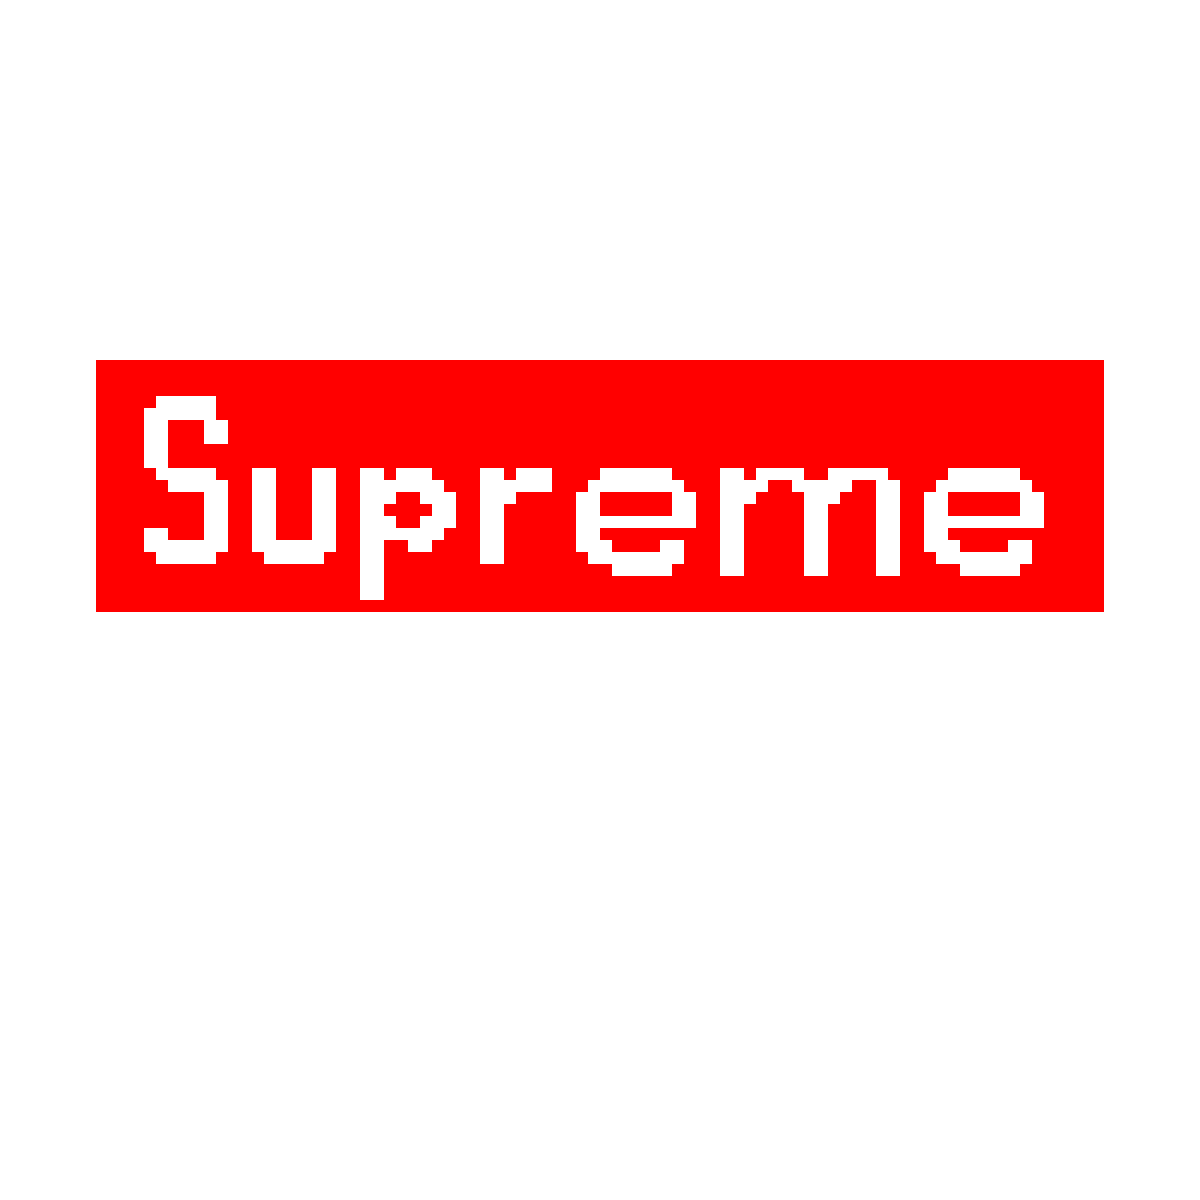 Transparent Supreme Logo Png Images Free Downloads Free Transparent Png Logos - supreme logo for roblox